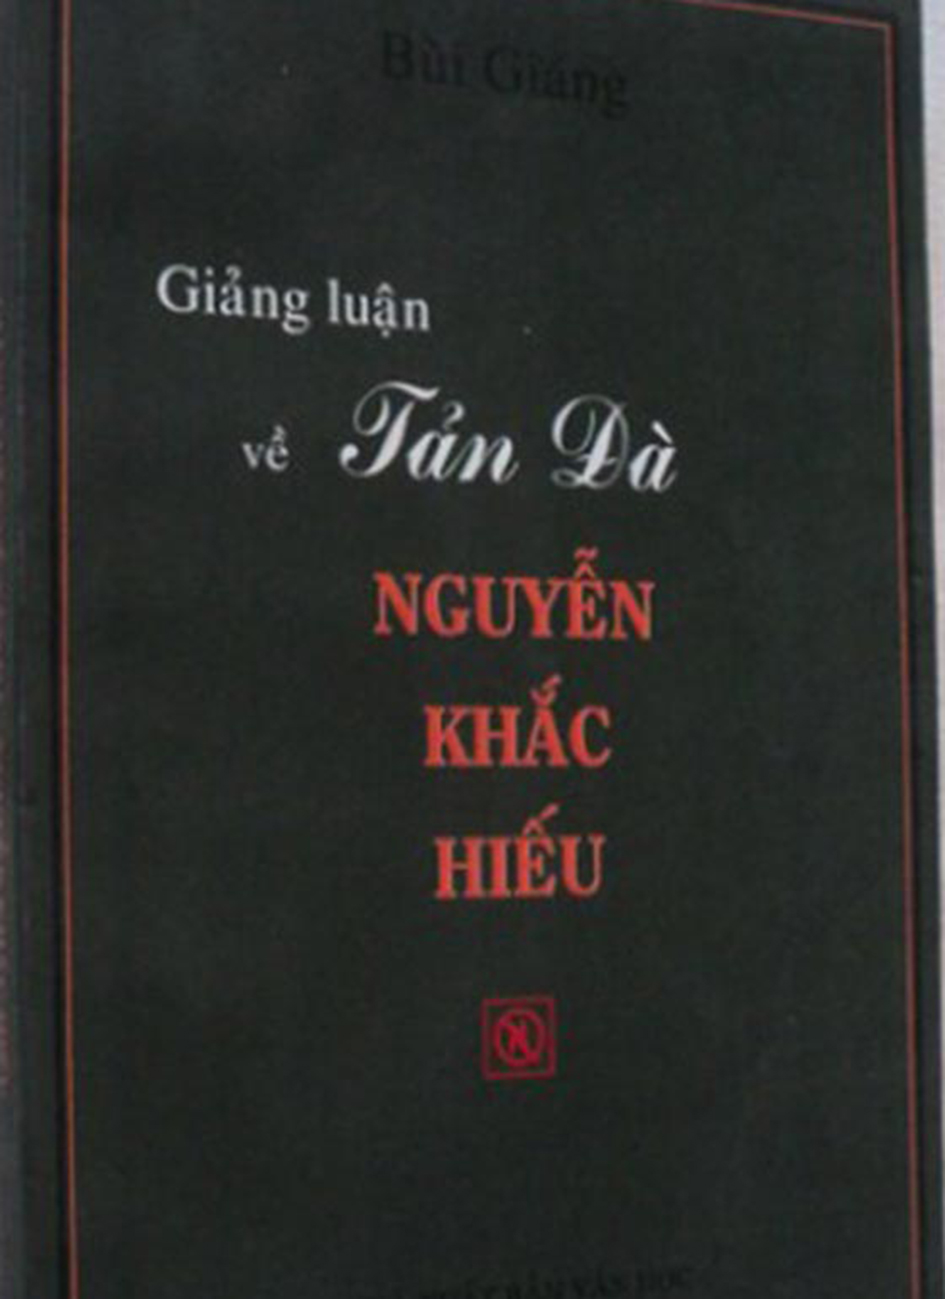 Giang luan ve Tan Da Bui Giang